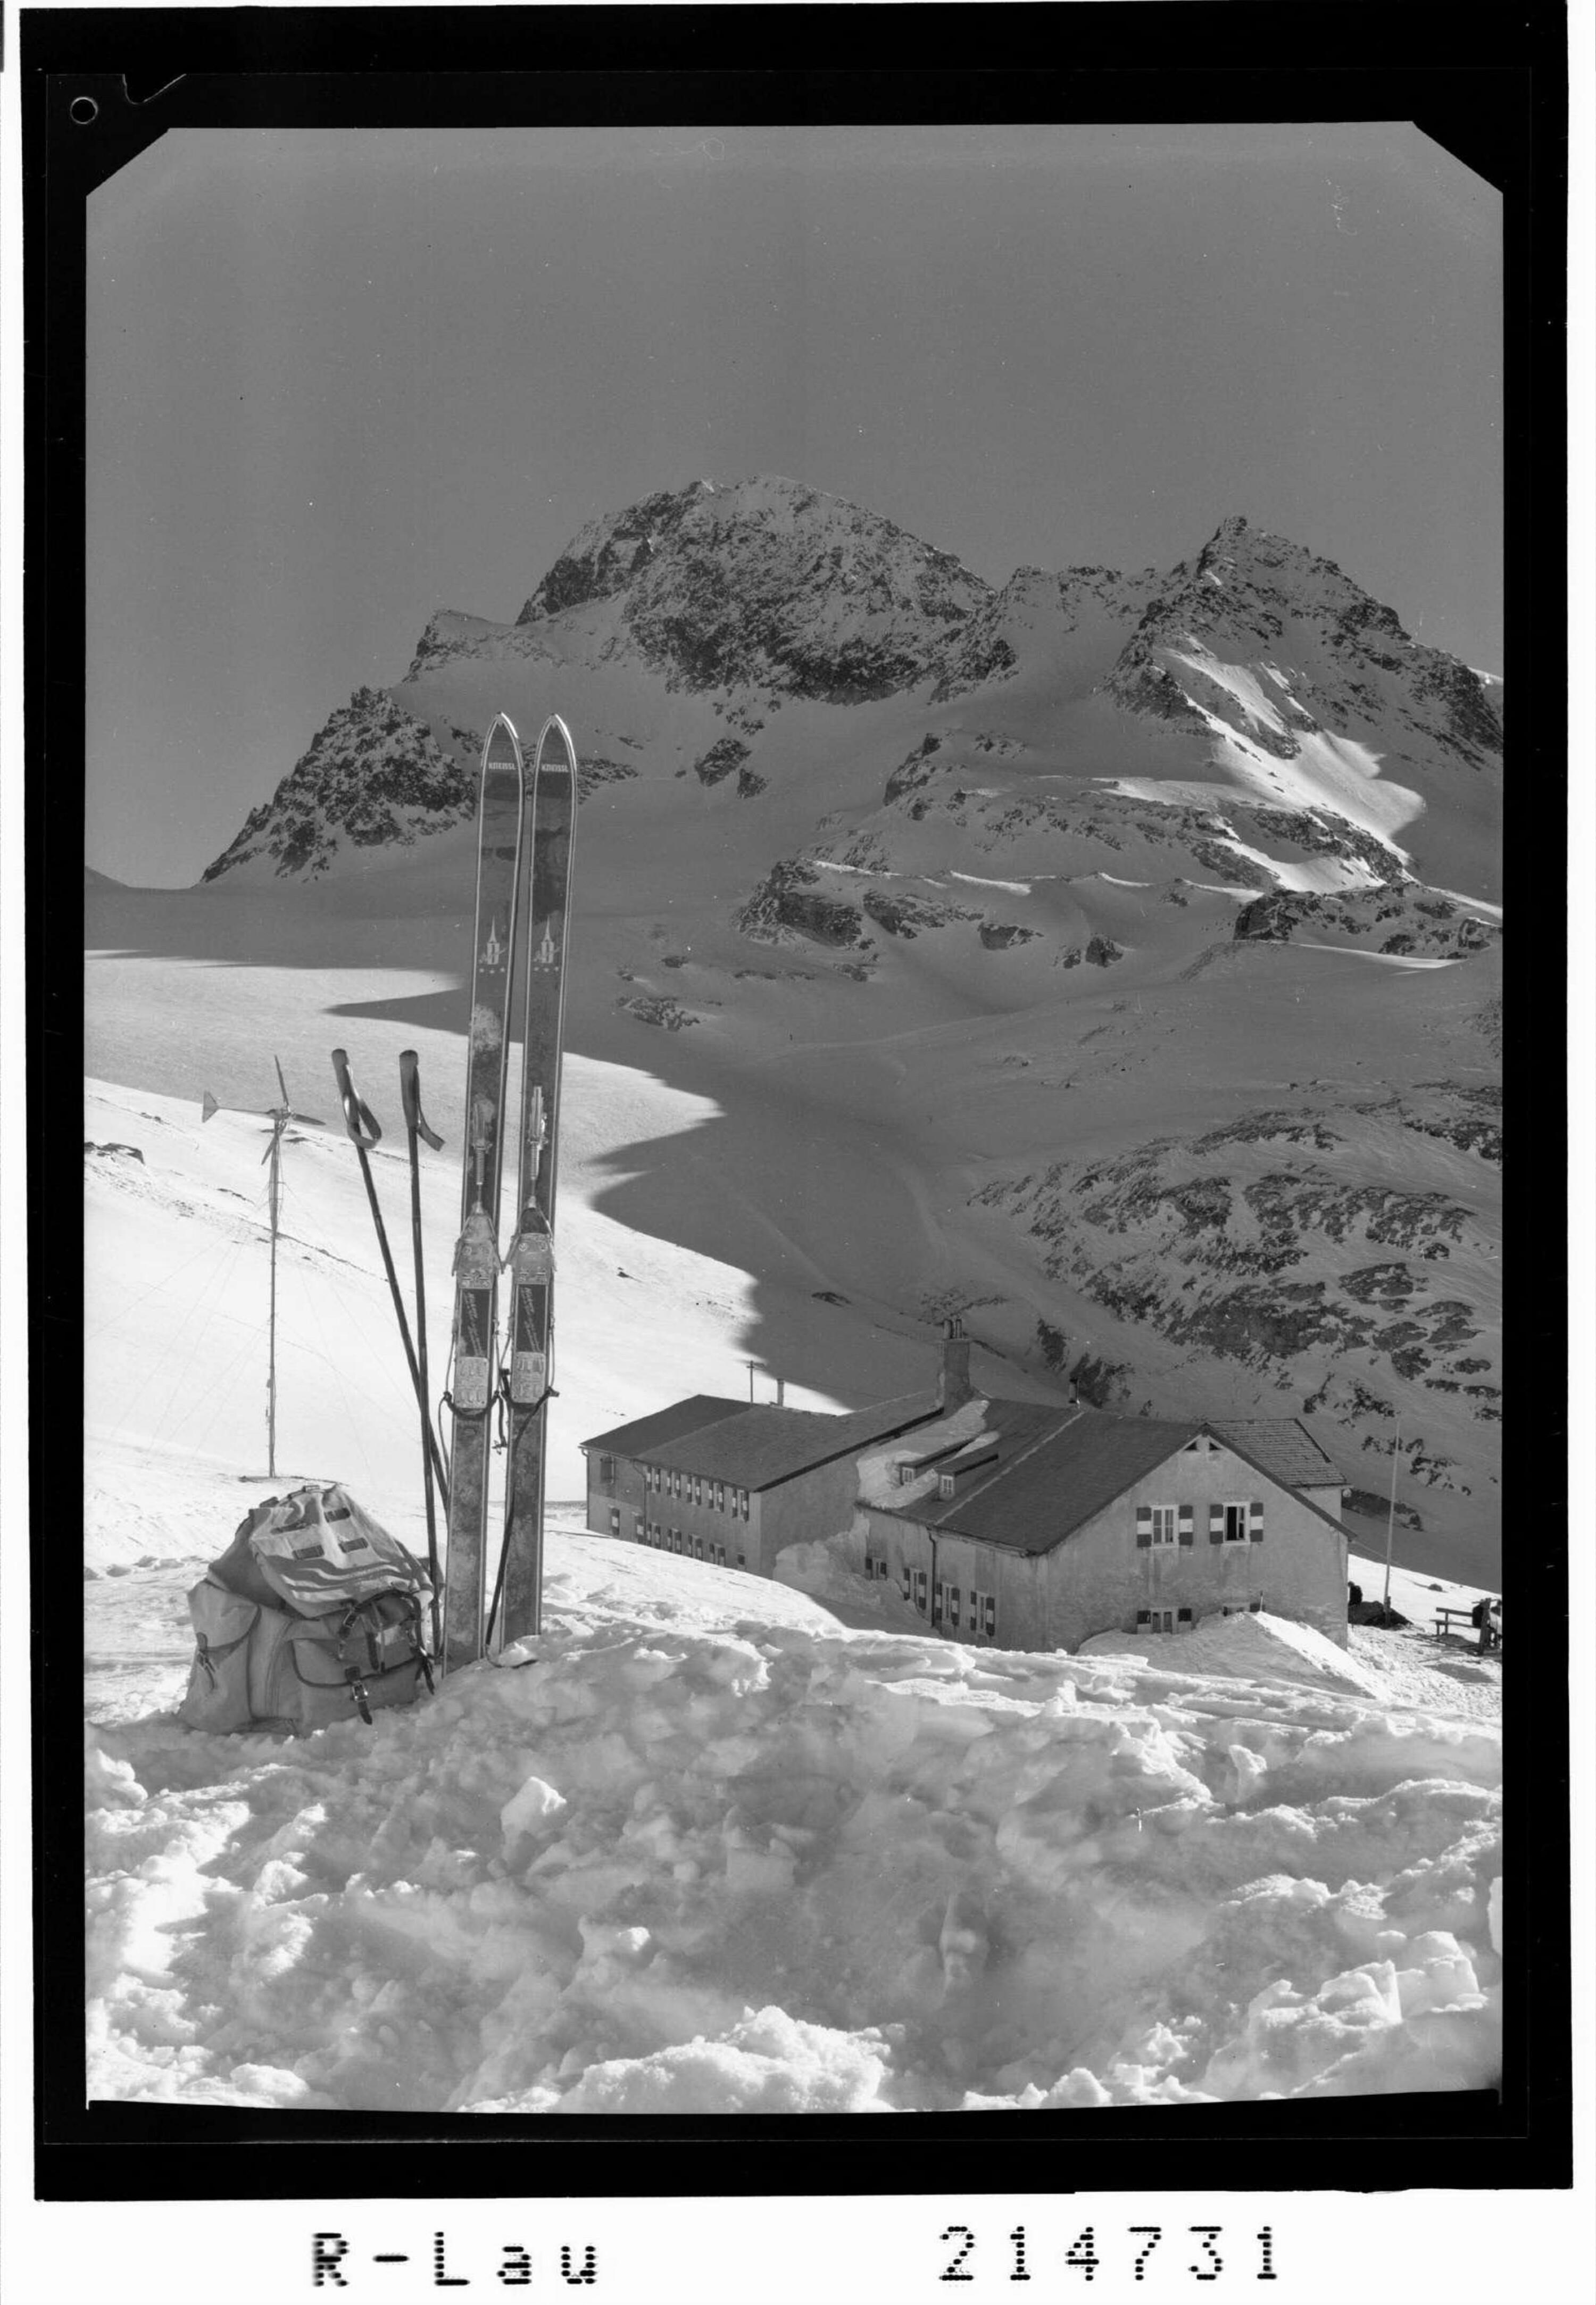 Wiesbadner Hütte 2443 m gegen Piz Buin 3312 m></div>


    <hr>
    <div class=